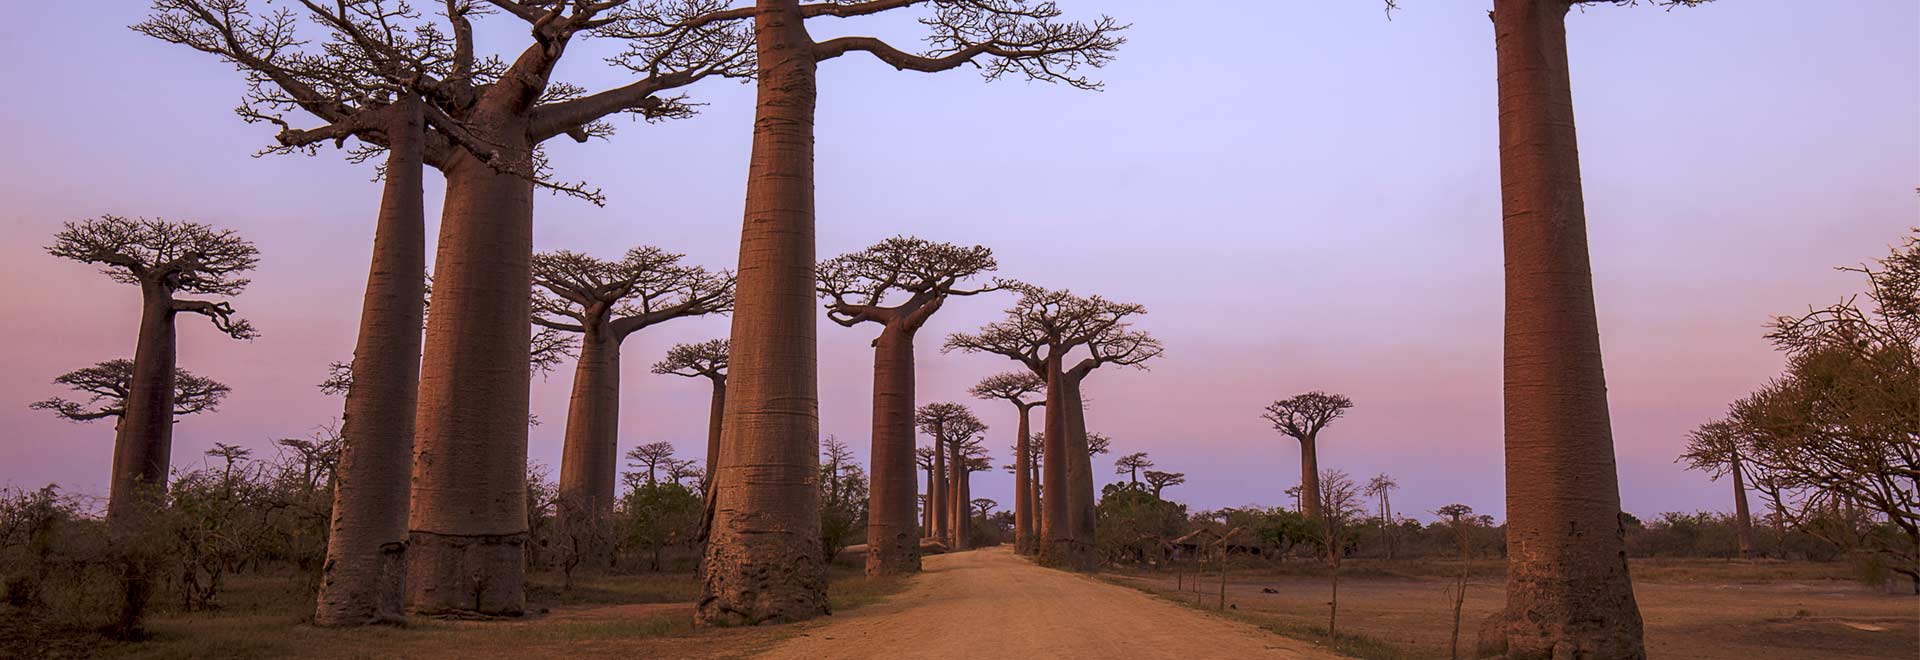 Africa Madagascar Avenue Baobab